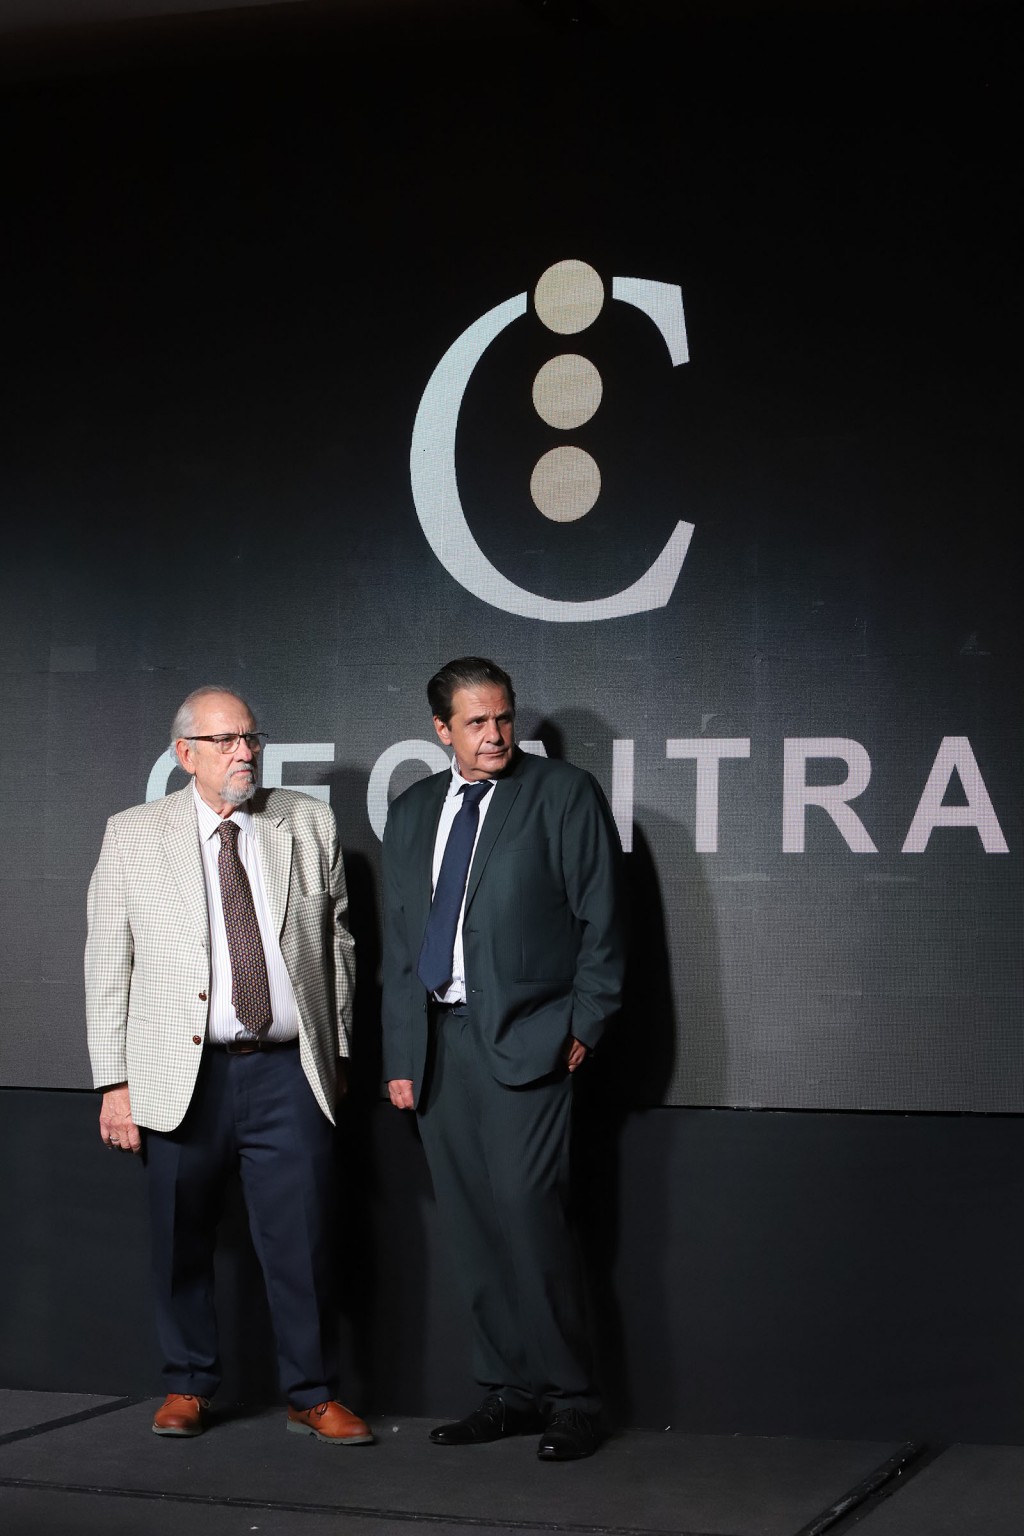 CECAITRA celebró sus 24 años renovando su compromiso con la seguridad vial